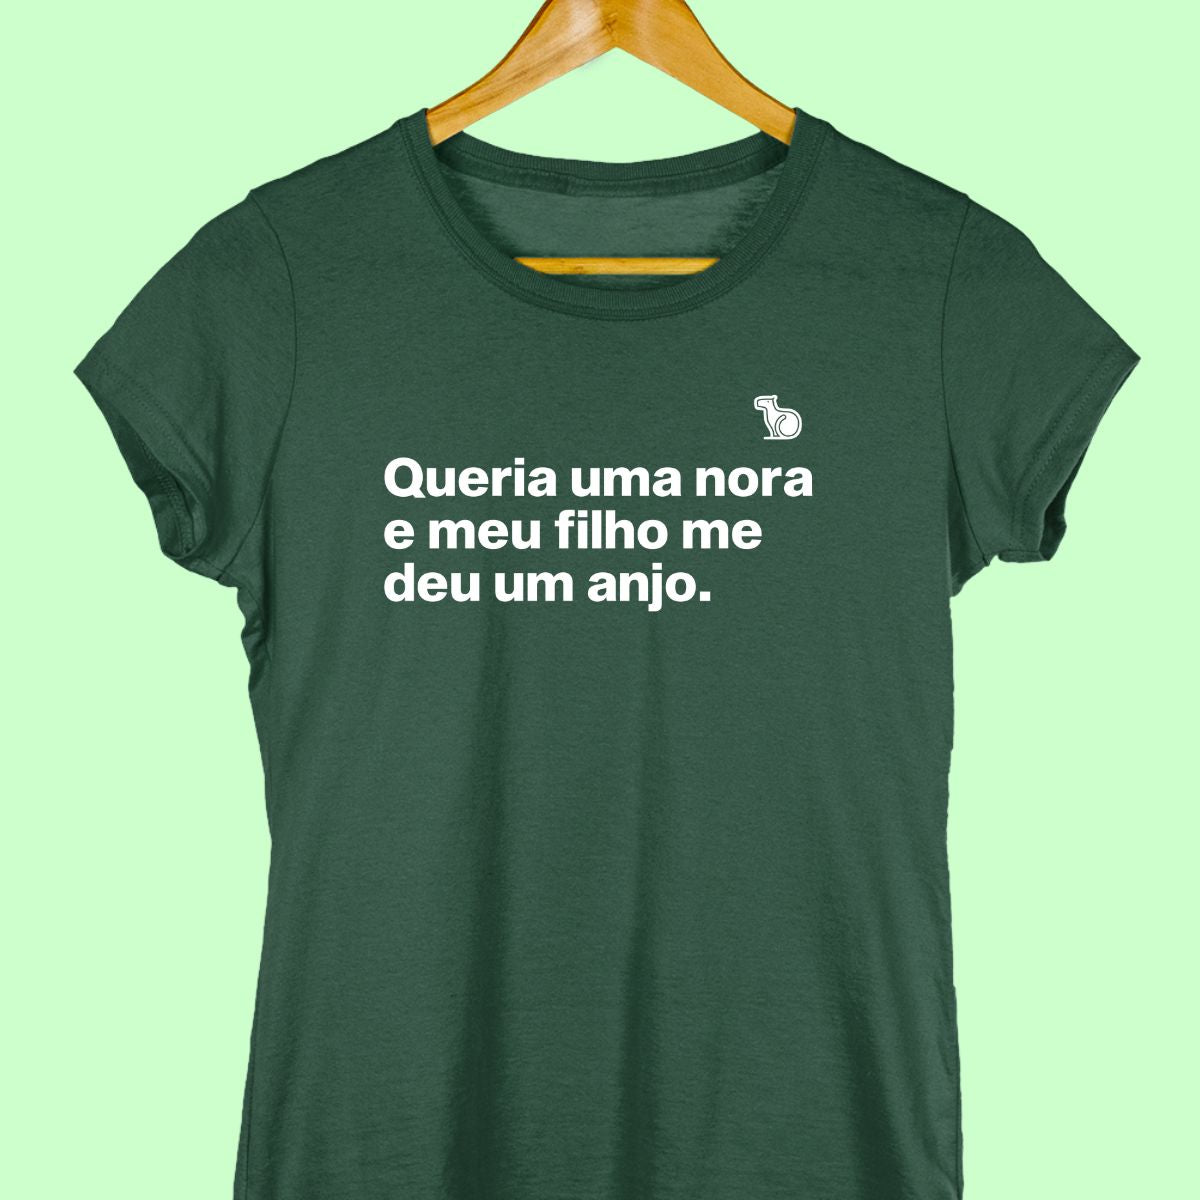 Camiseta com a frase "Queria uma nora e meu filho me deu um anjo." feminina verde.